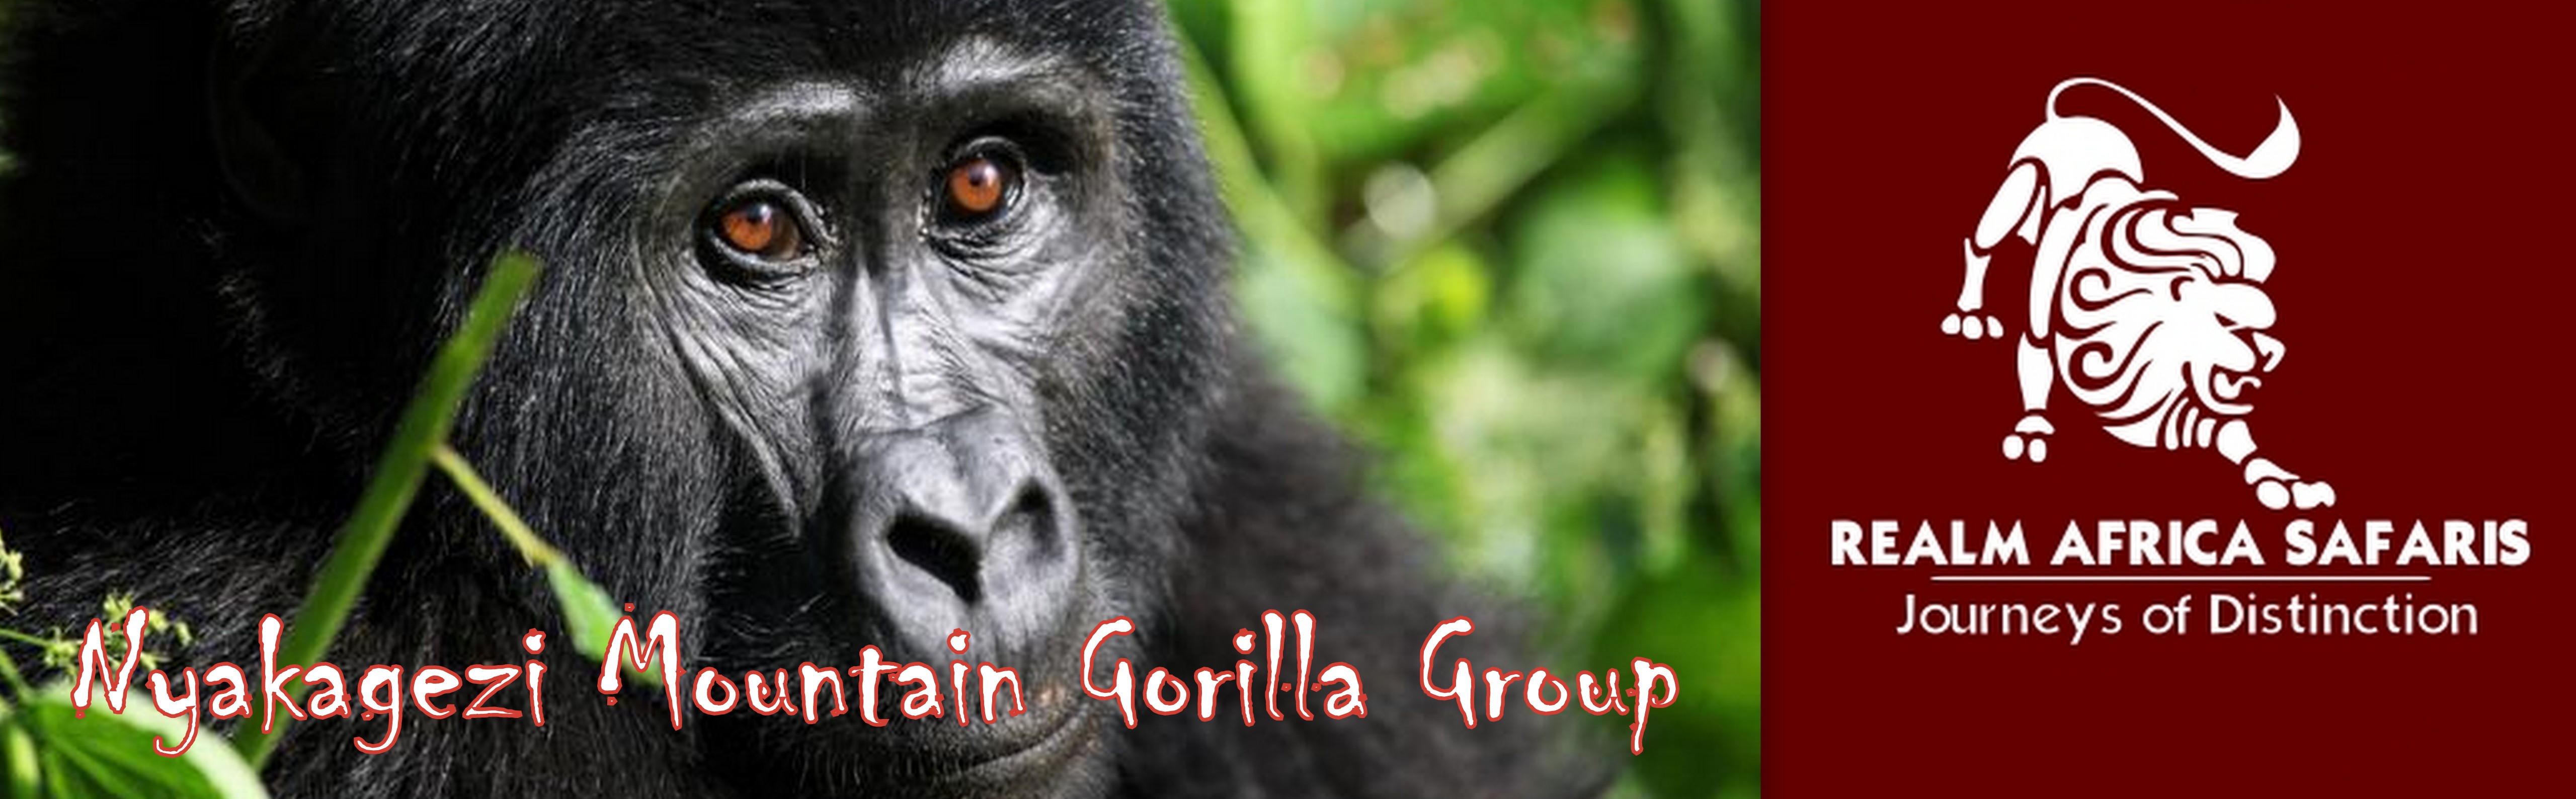 Nyakagezi Mountain Gorilla family | Realm Africa Safaris™